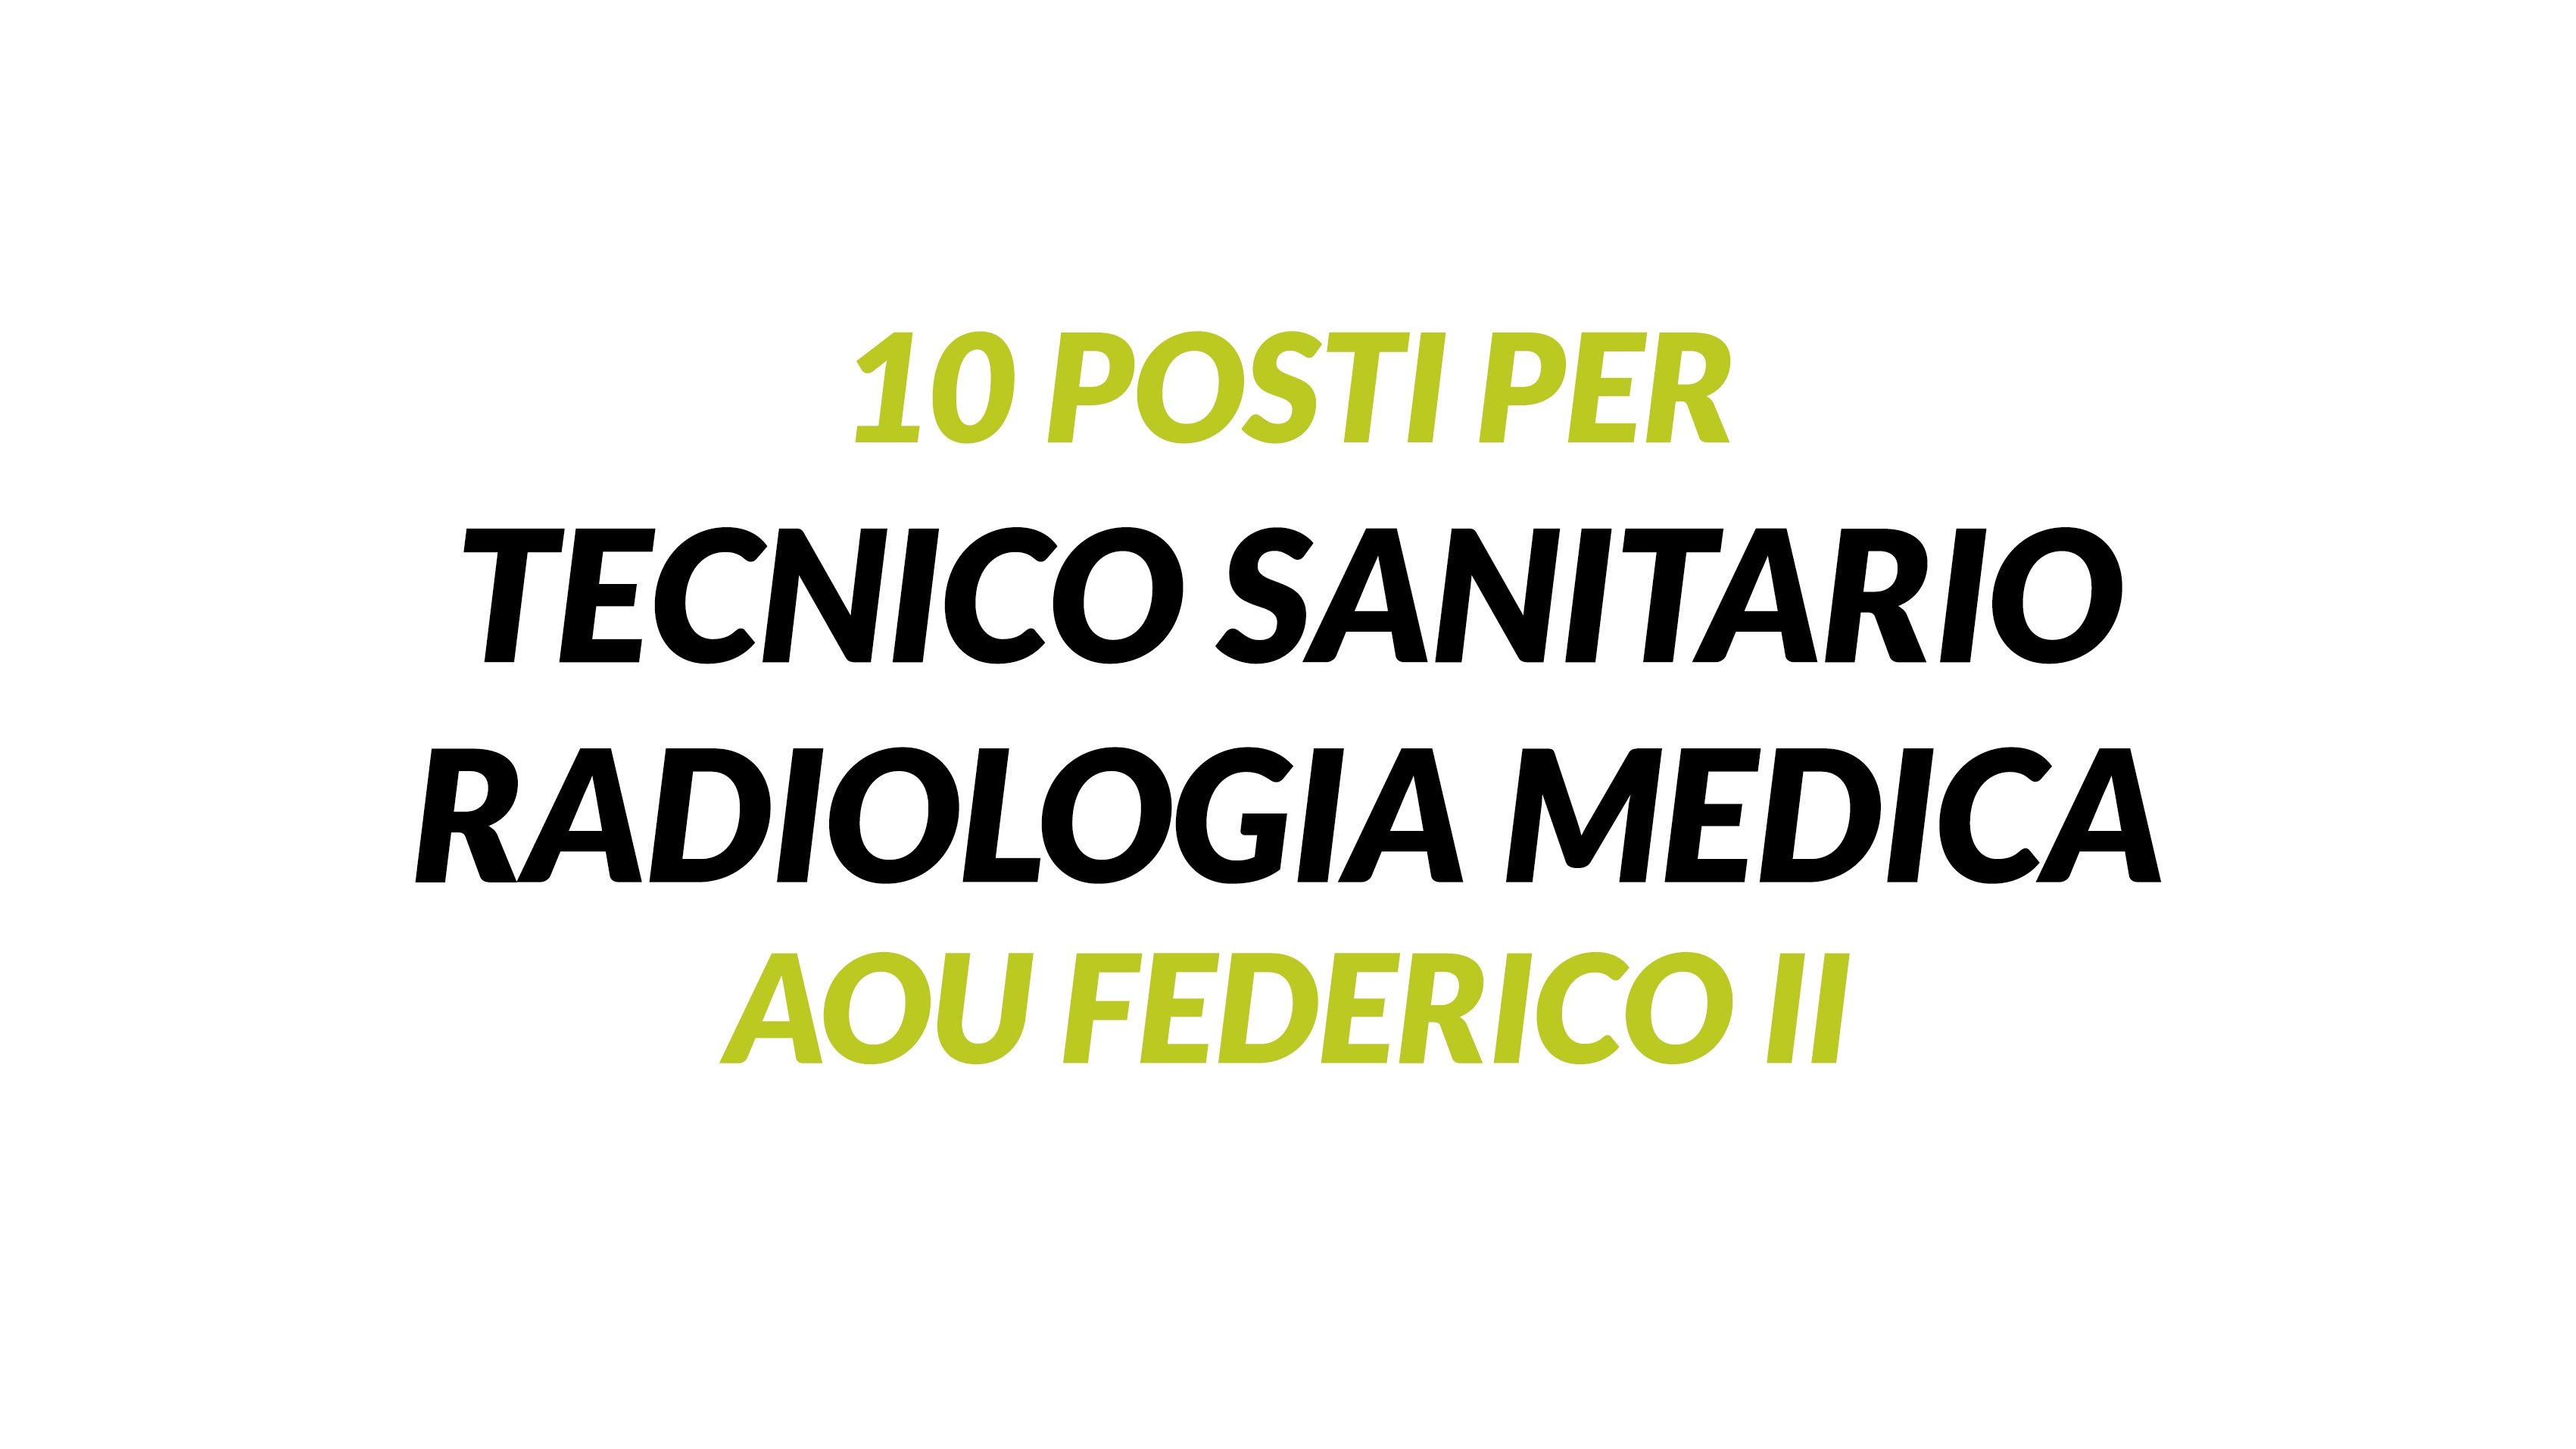 10 posti per TECNICO SANITARIO RADIOLOGIA MEDICA Napoli FEDERICO II concorso 2019